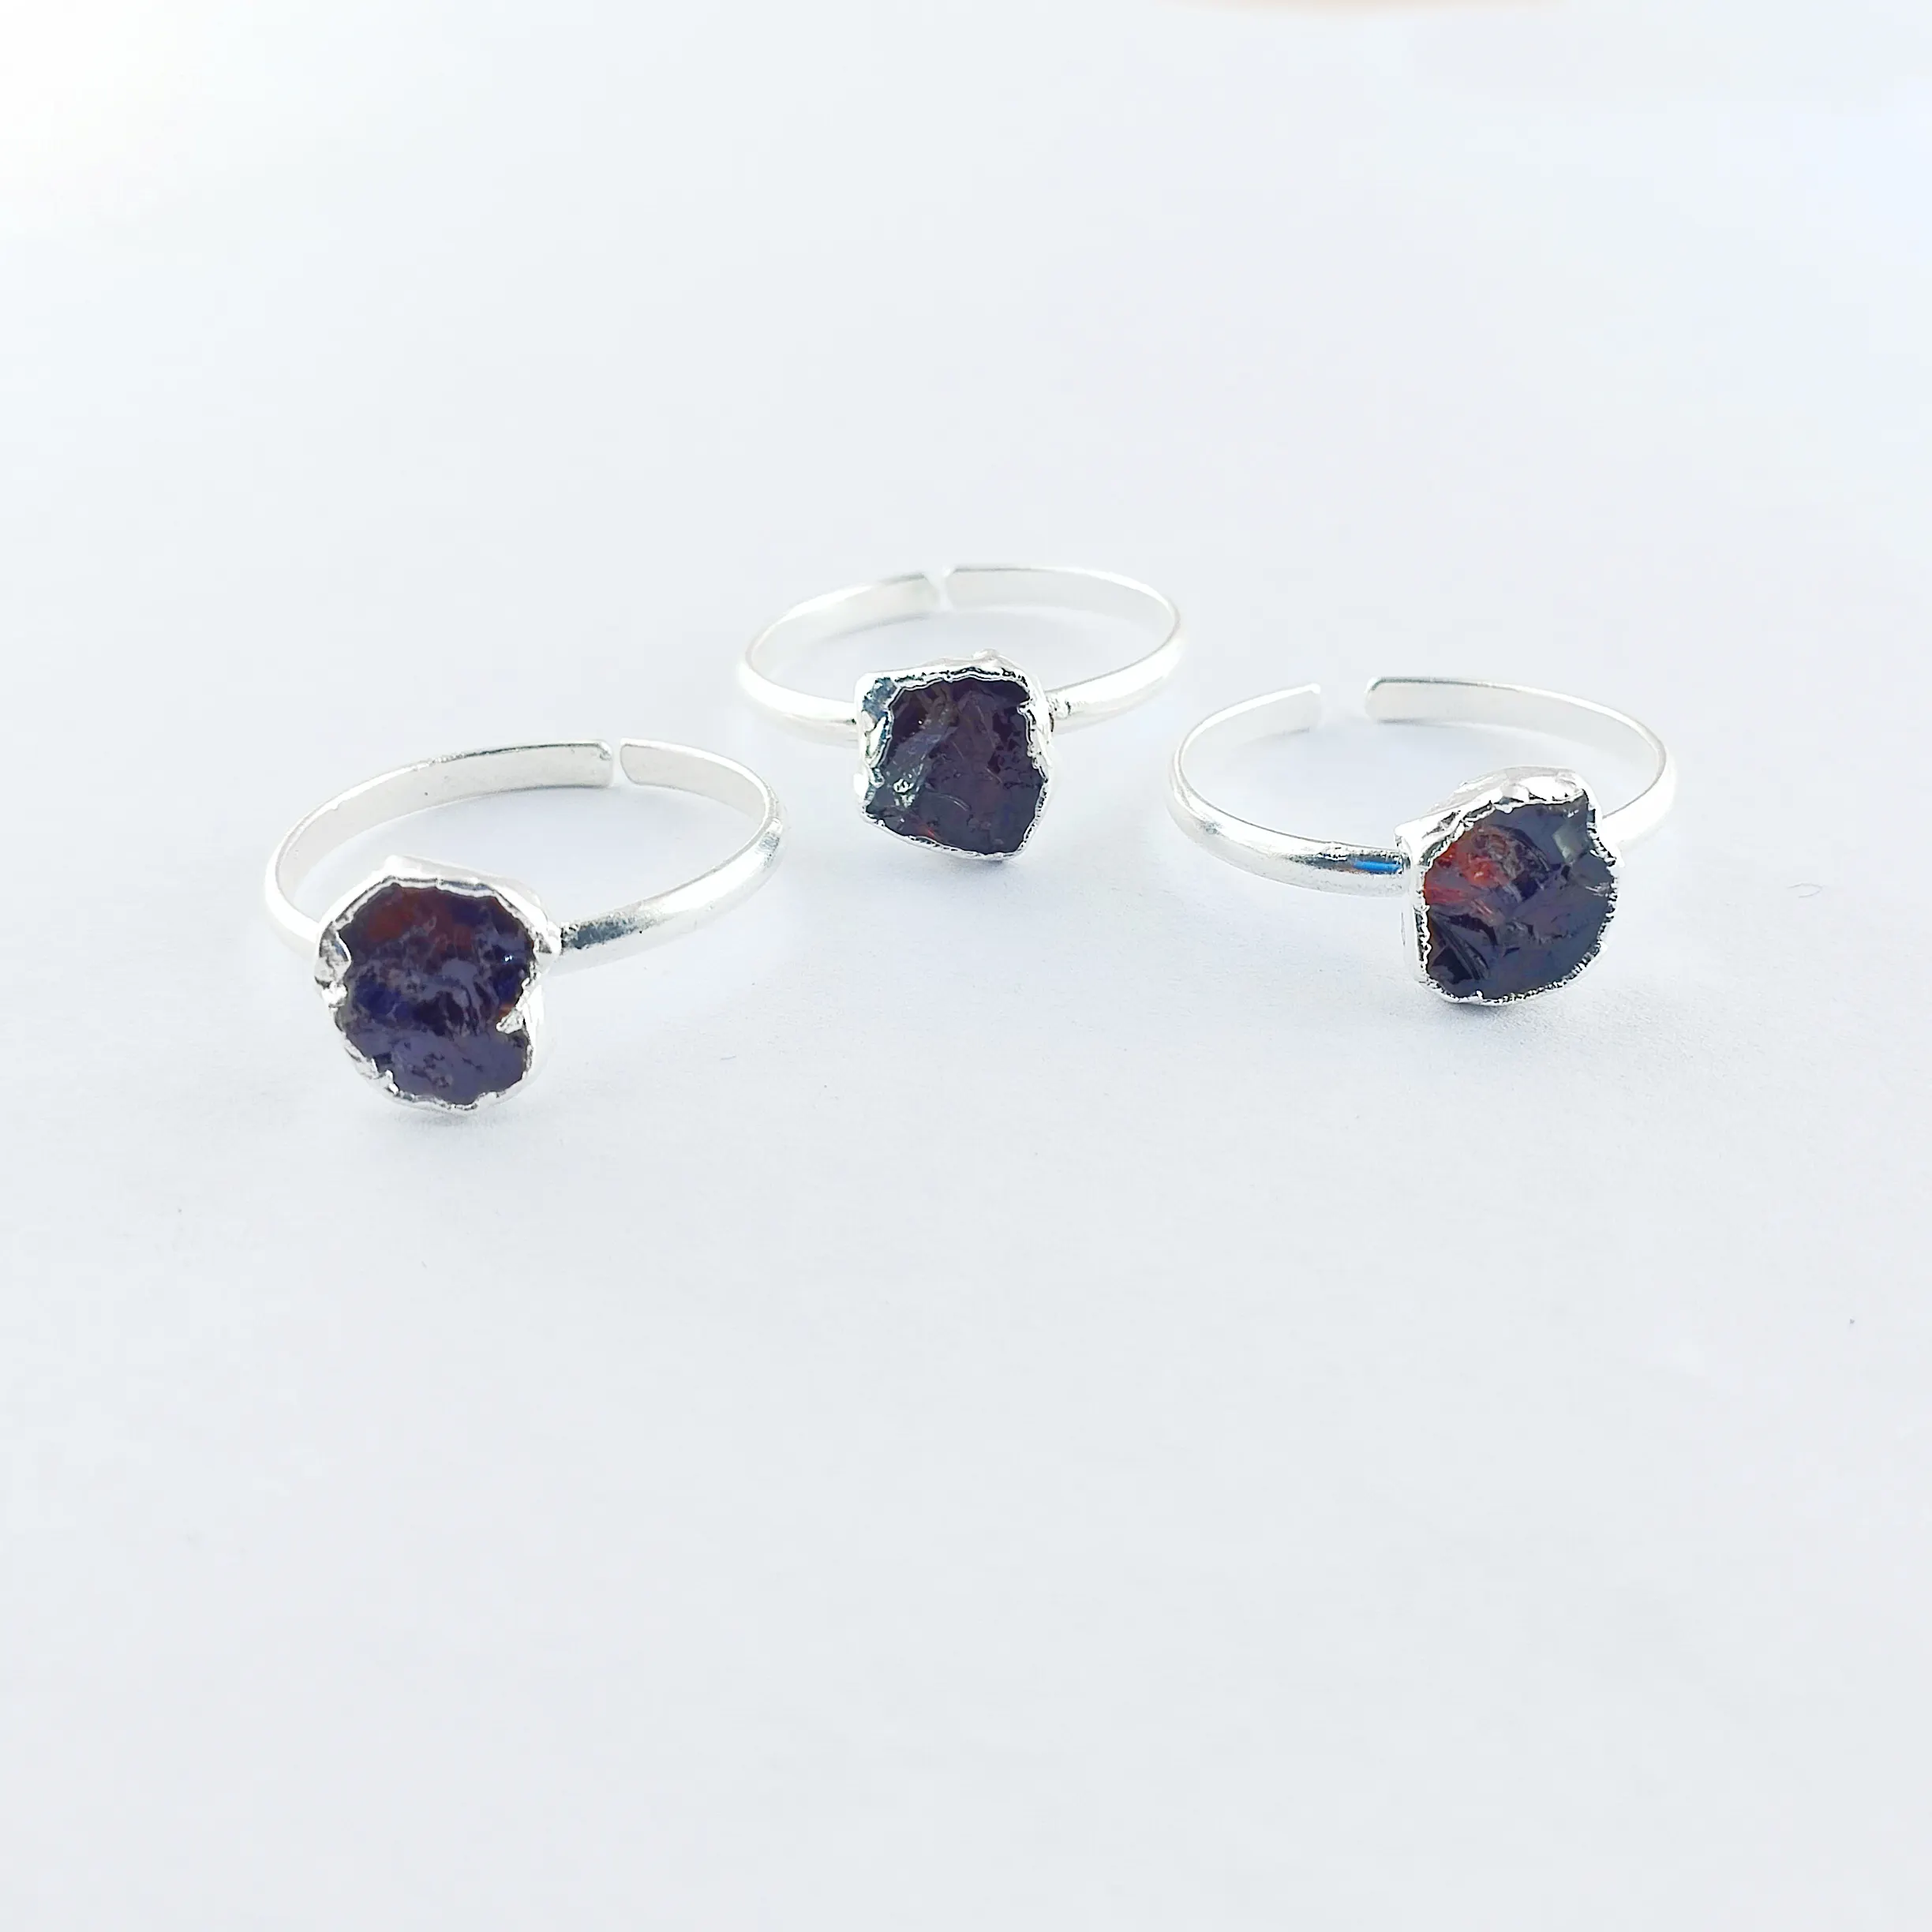 Granat-Roh edelstein ringe, verstellbare Ringe aus 925er Sterling silber, versilberte Ringe